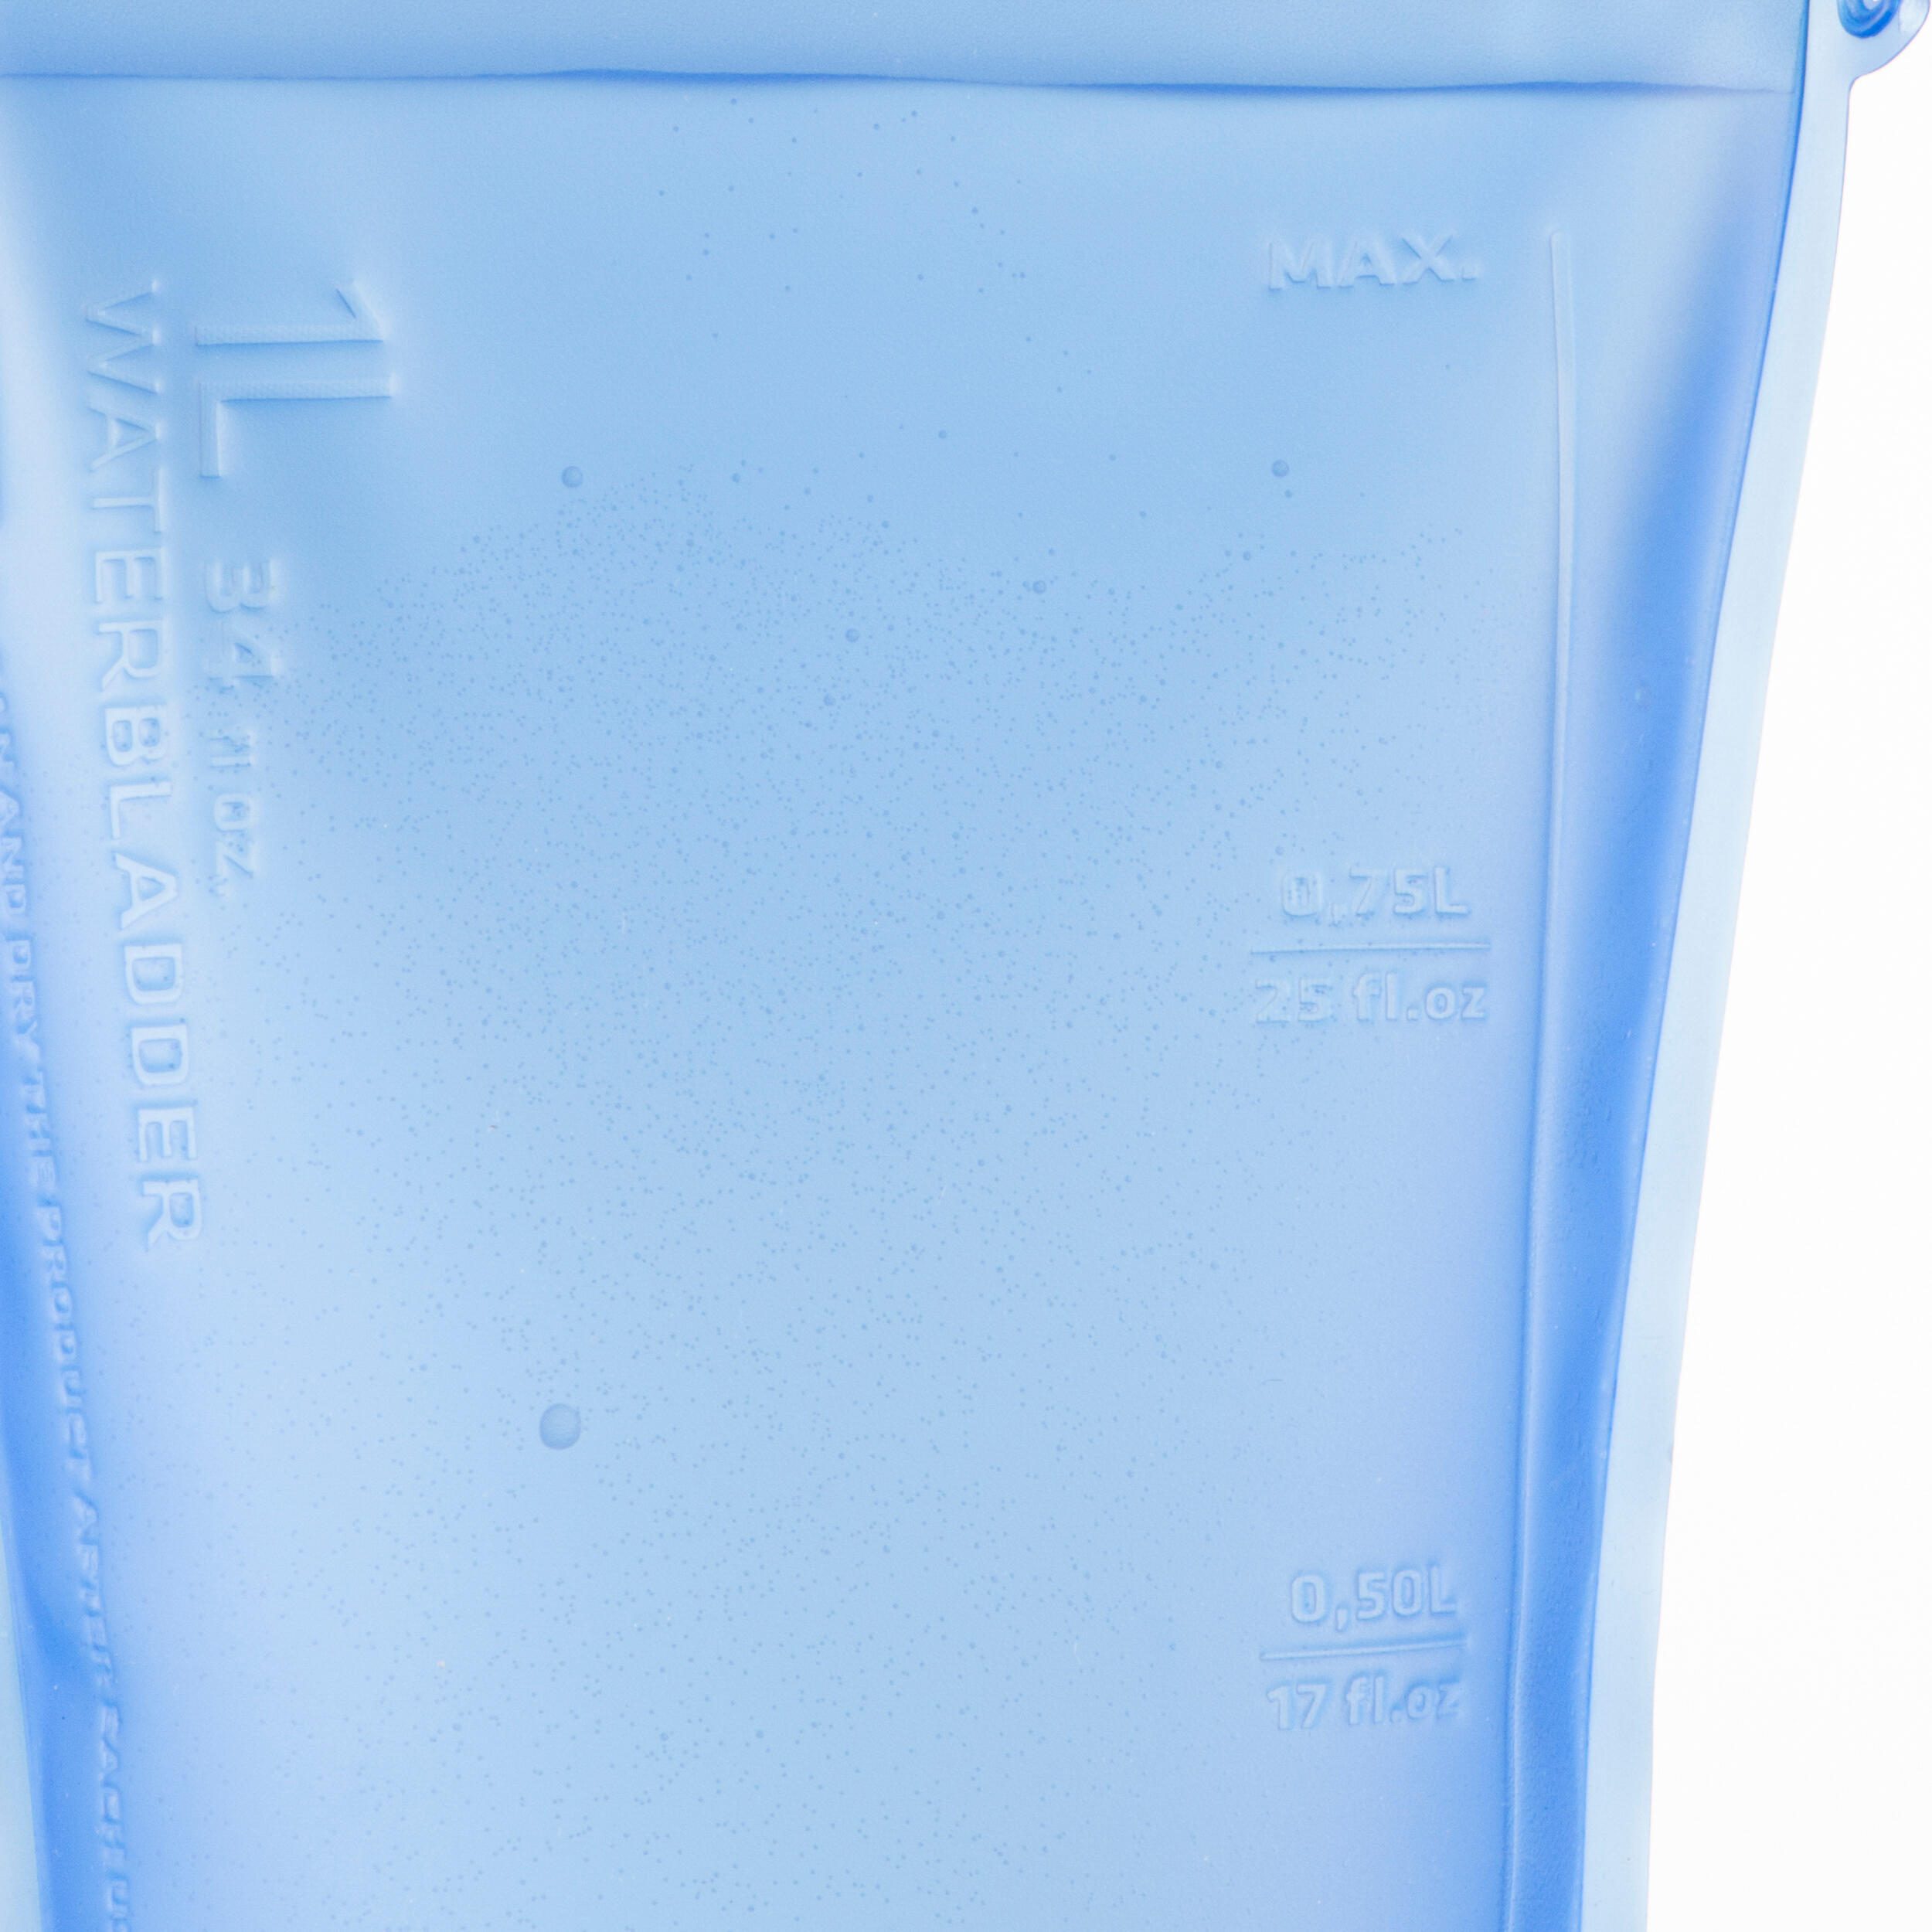 1L Hydration Bladder - Blue/Clear 7/7